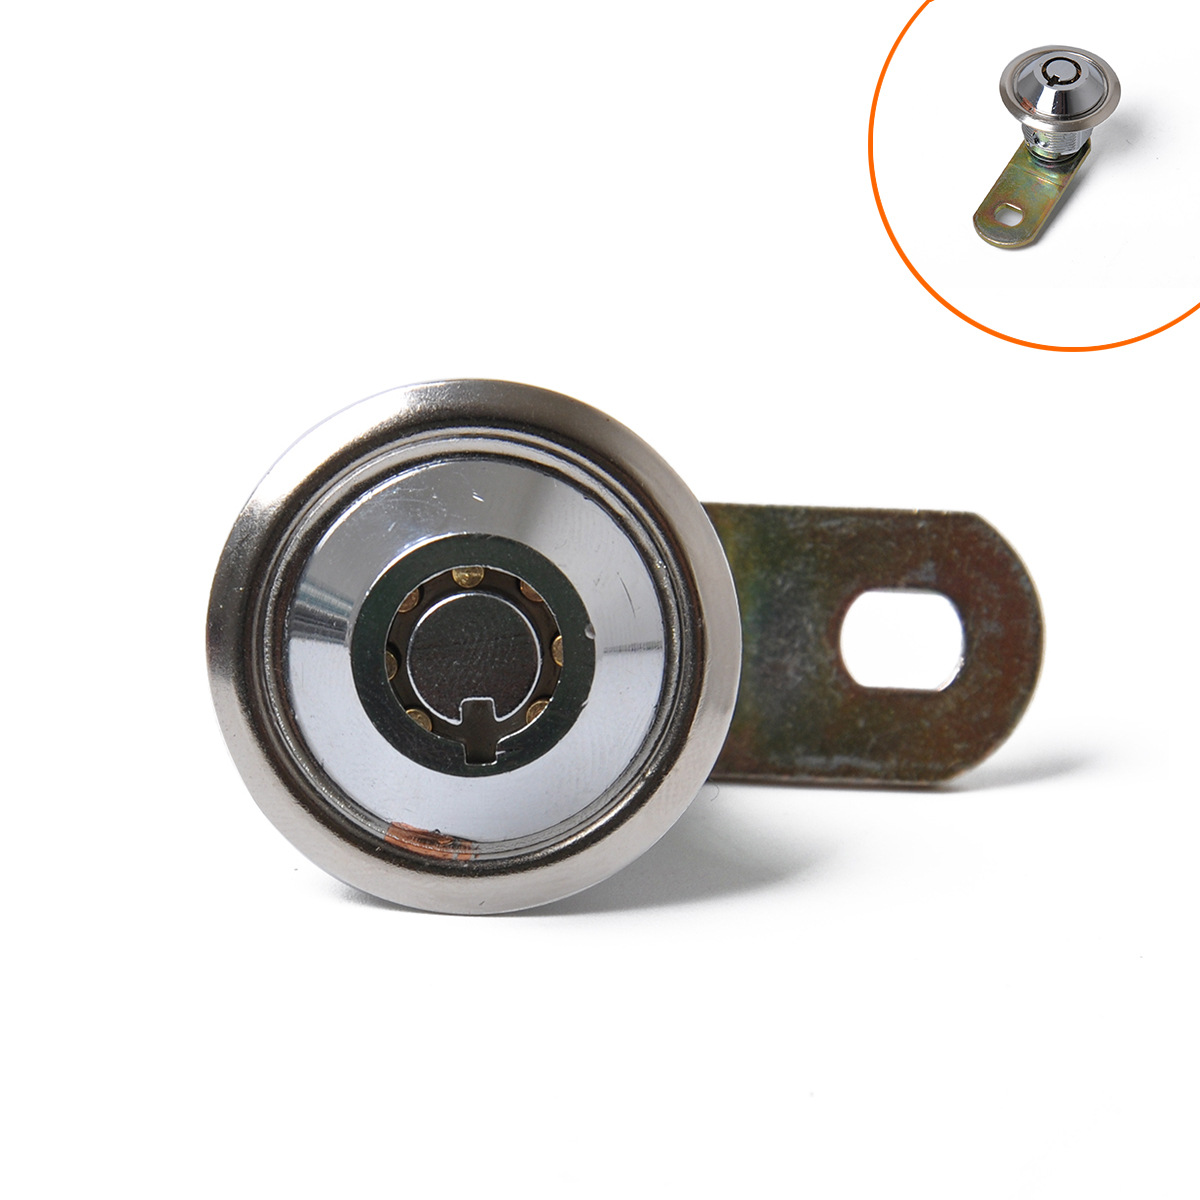 房车电箱锁高安全转舌锁/管状凸轮锁电柜箱锁小圆锁 2/4只装